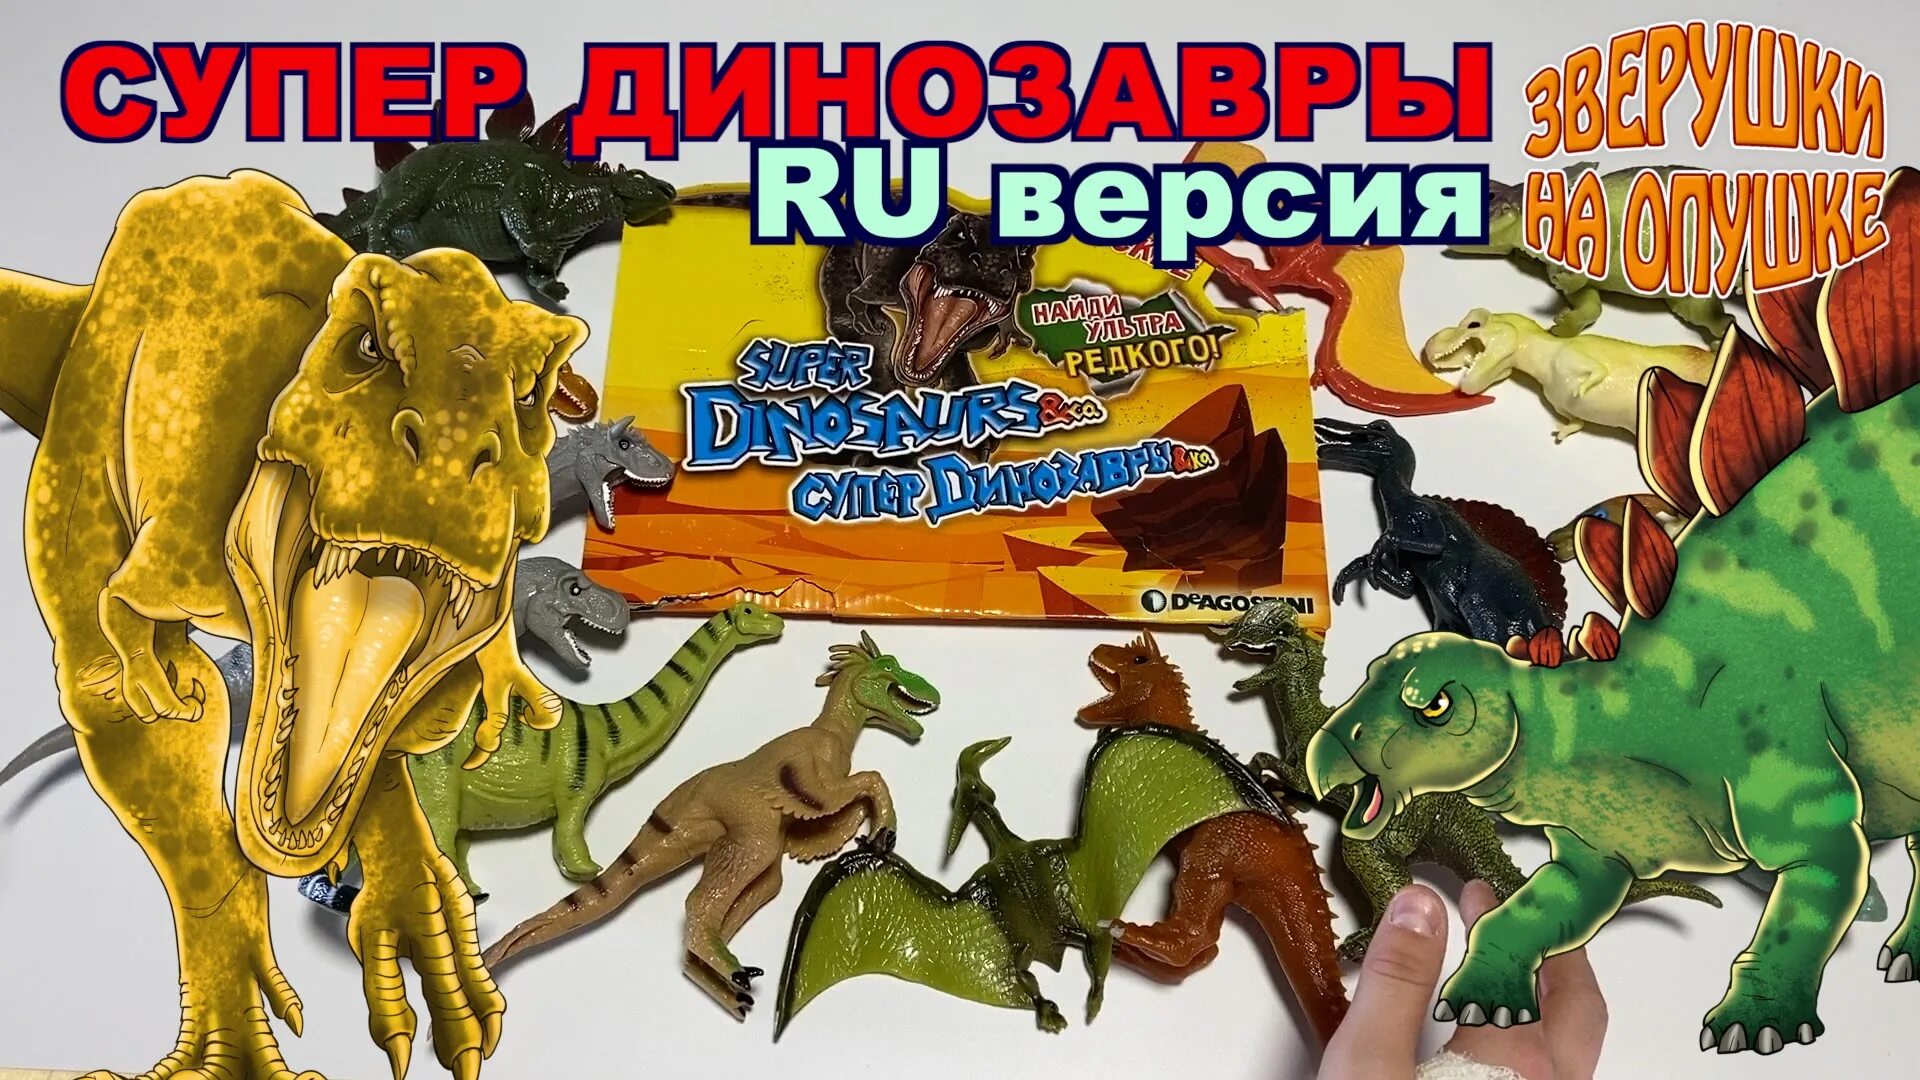 Супер динозавры и ко макси ДЕАГОСТИНИ. ДЕАГОСТИНИ морские динозавры энд ко макси. Коллекция эко макси динозавры. Хищники Юрского периода игрушки ДЕАГОСТИНИ. Динозавры сборник